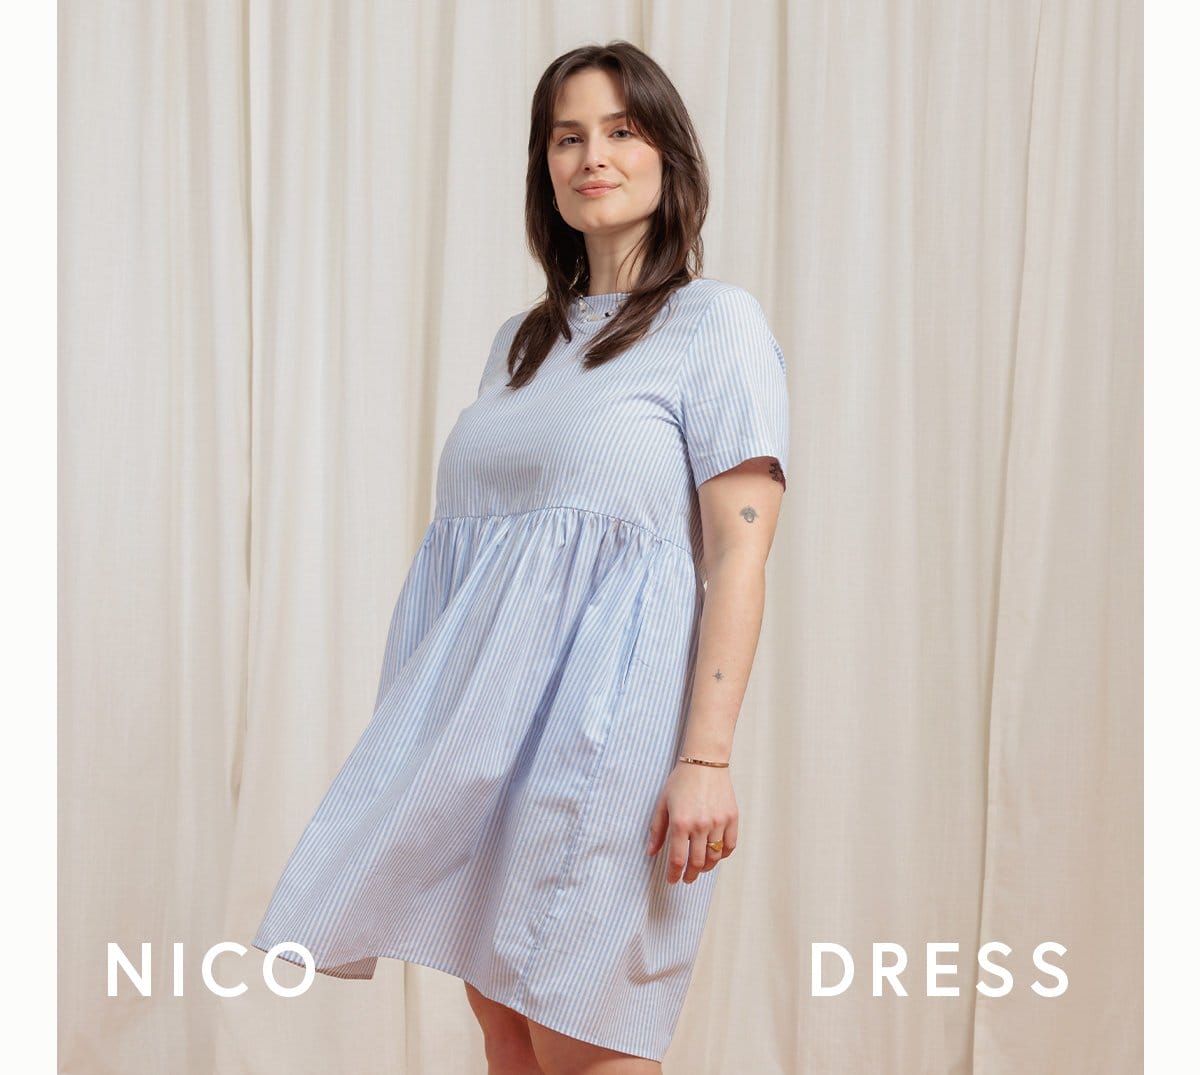 Nico Dress